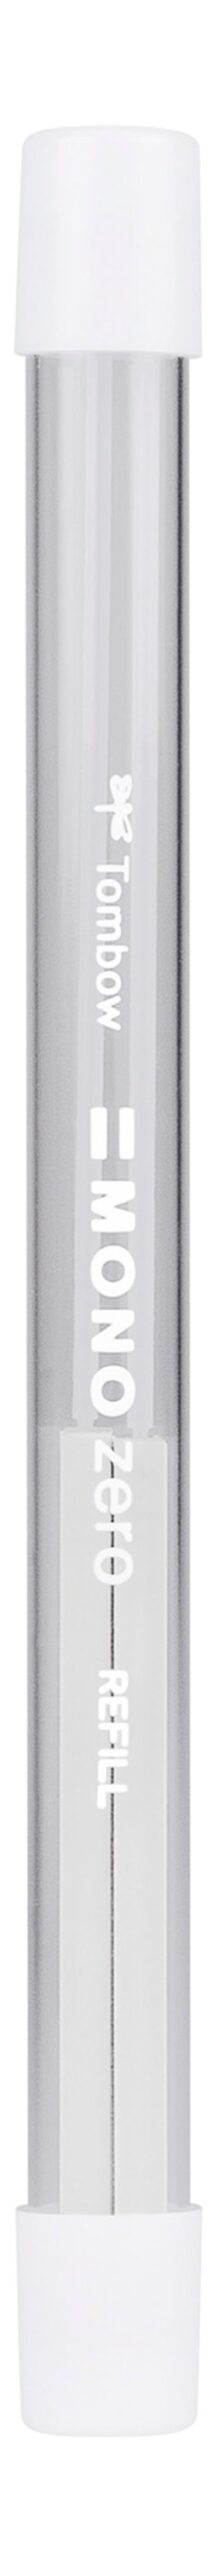 Tombow MONO Zero Refill For Rectangular Tip Eraser Pen White – ER-KUS